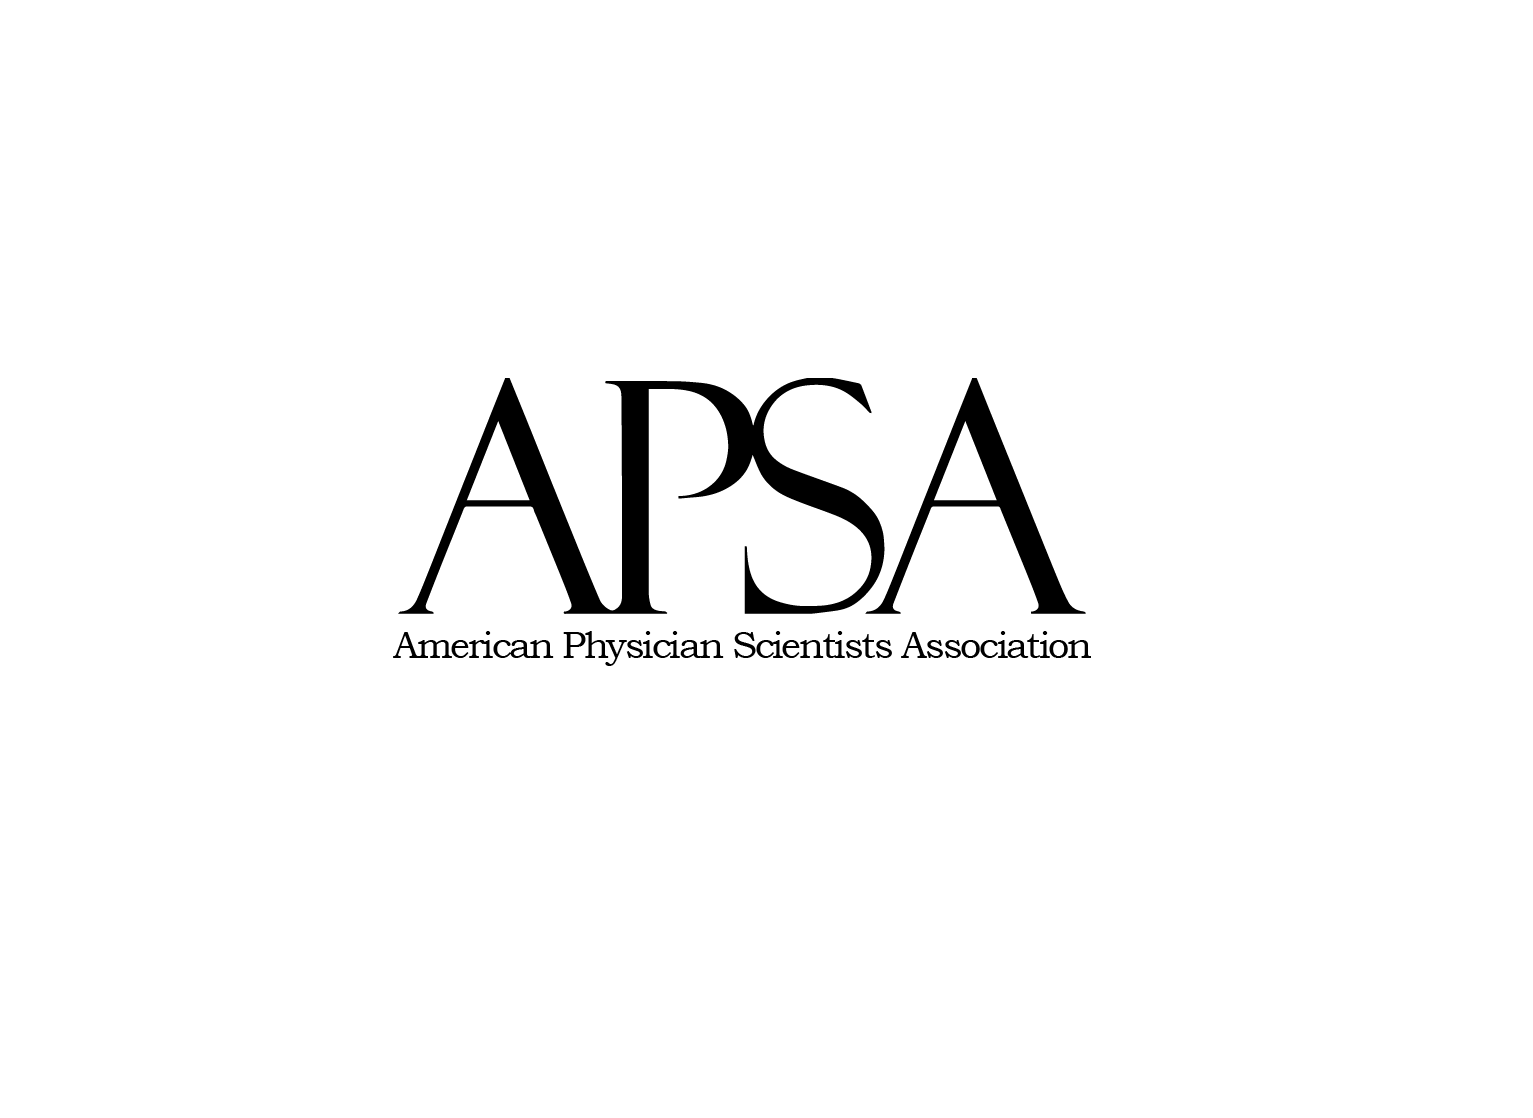 Copy of APSA logo full name - Copy.png